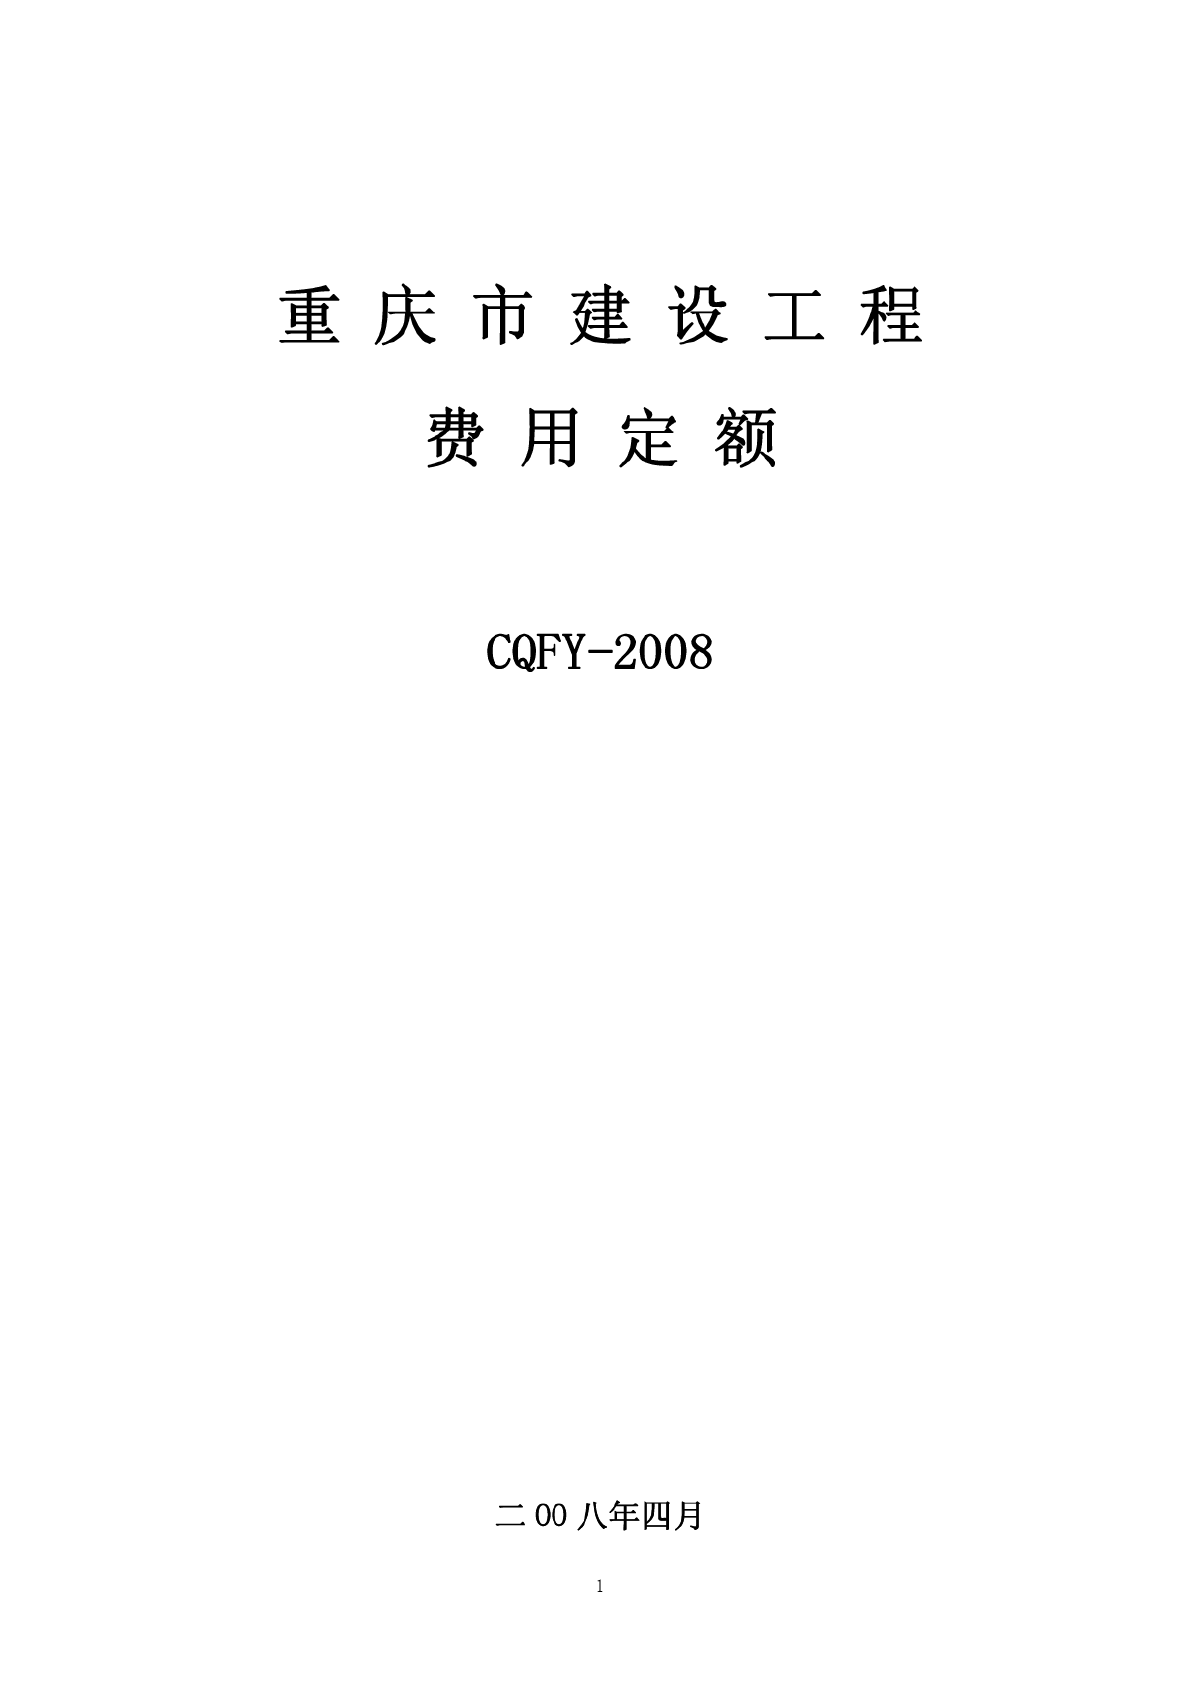 重庆市建设工程费用定额(CQFY-2008)